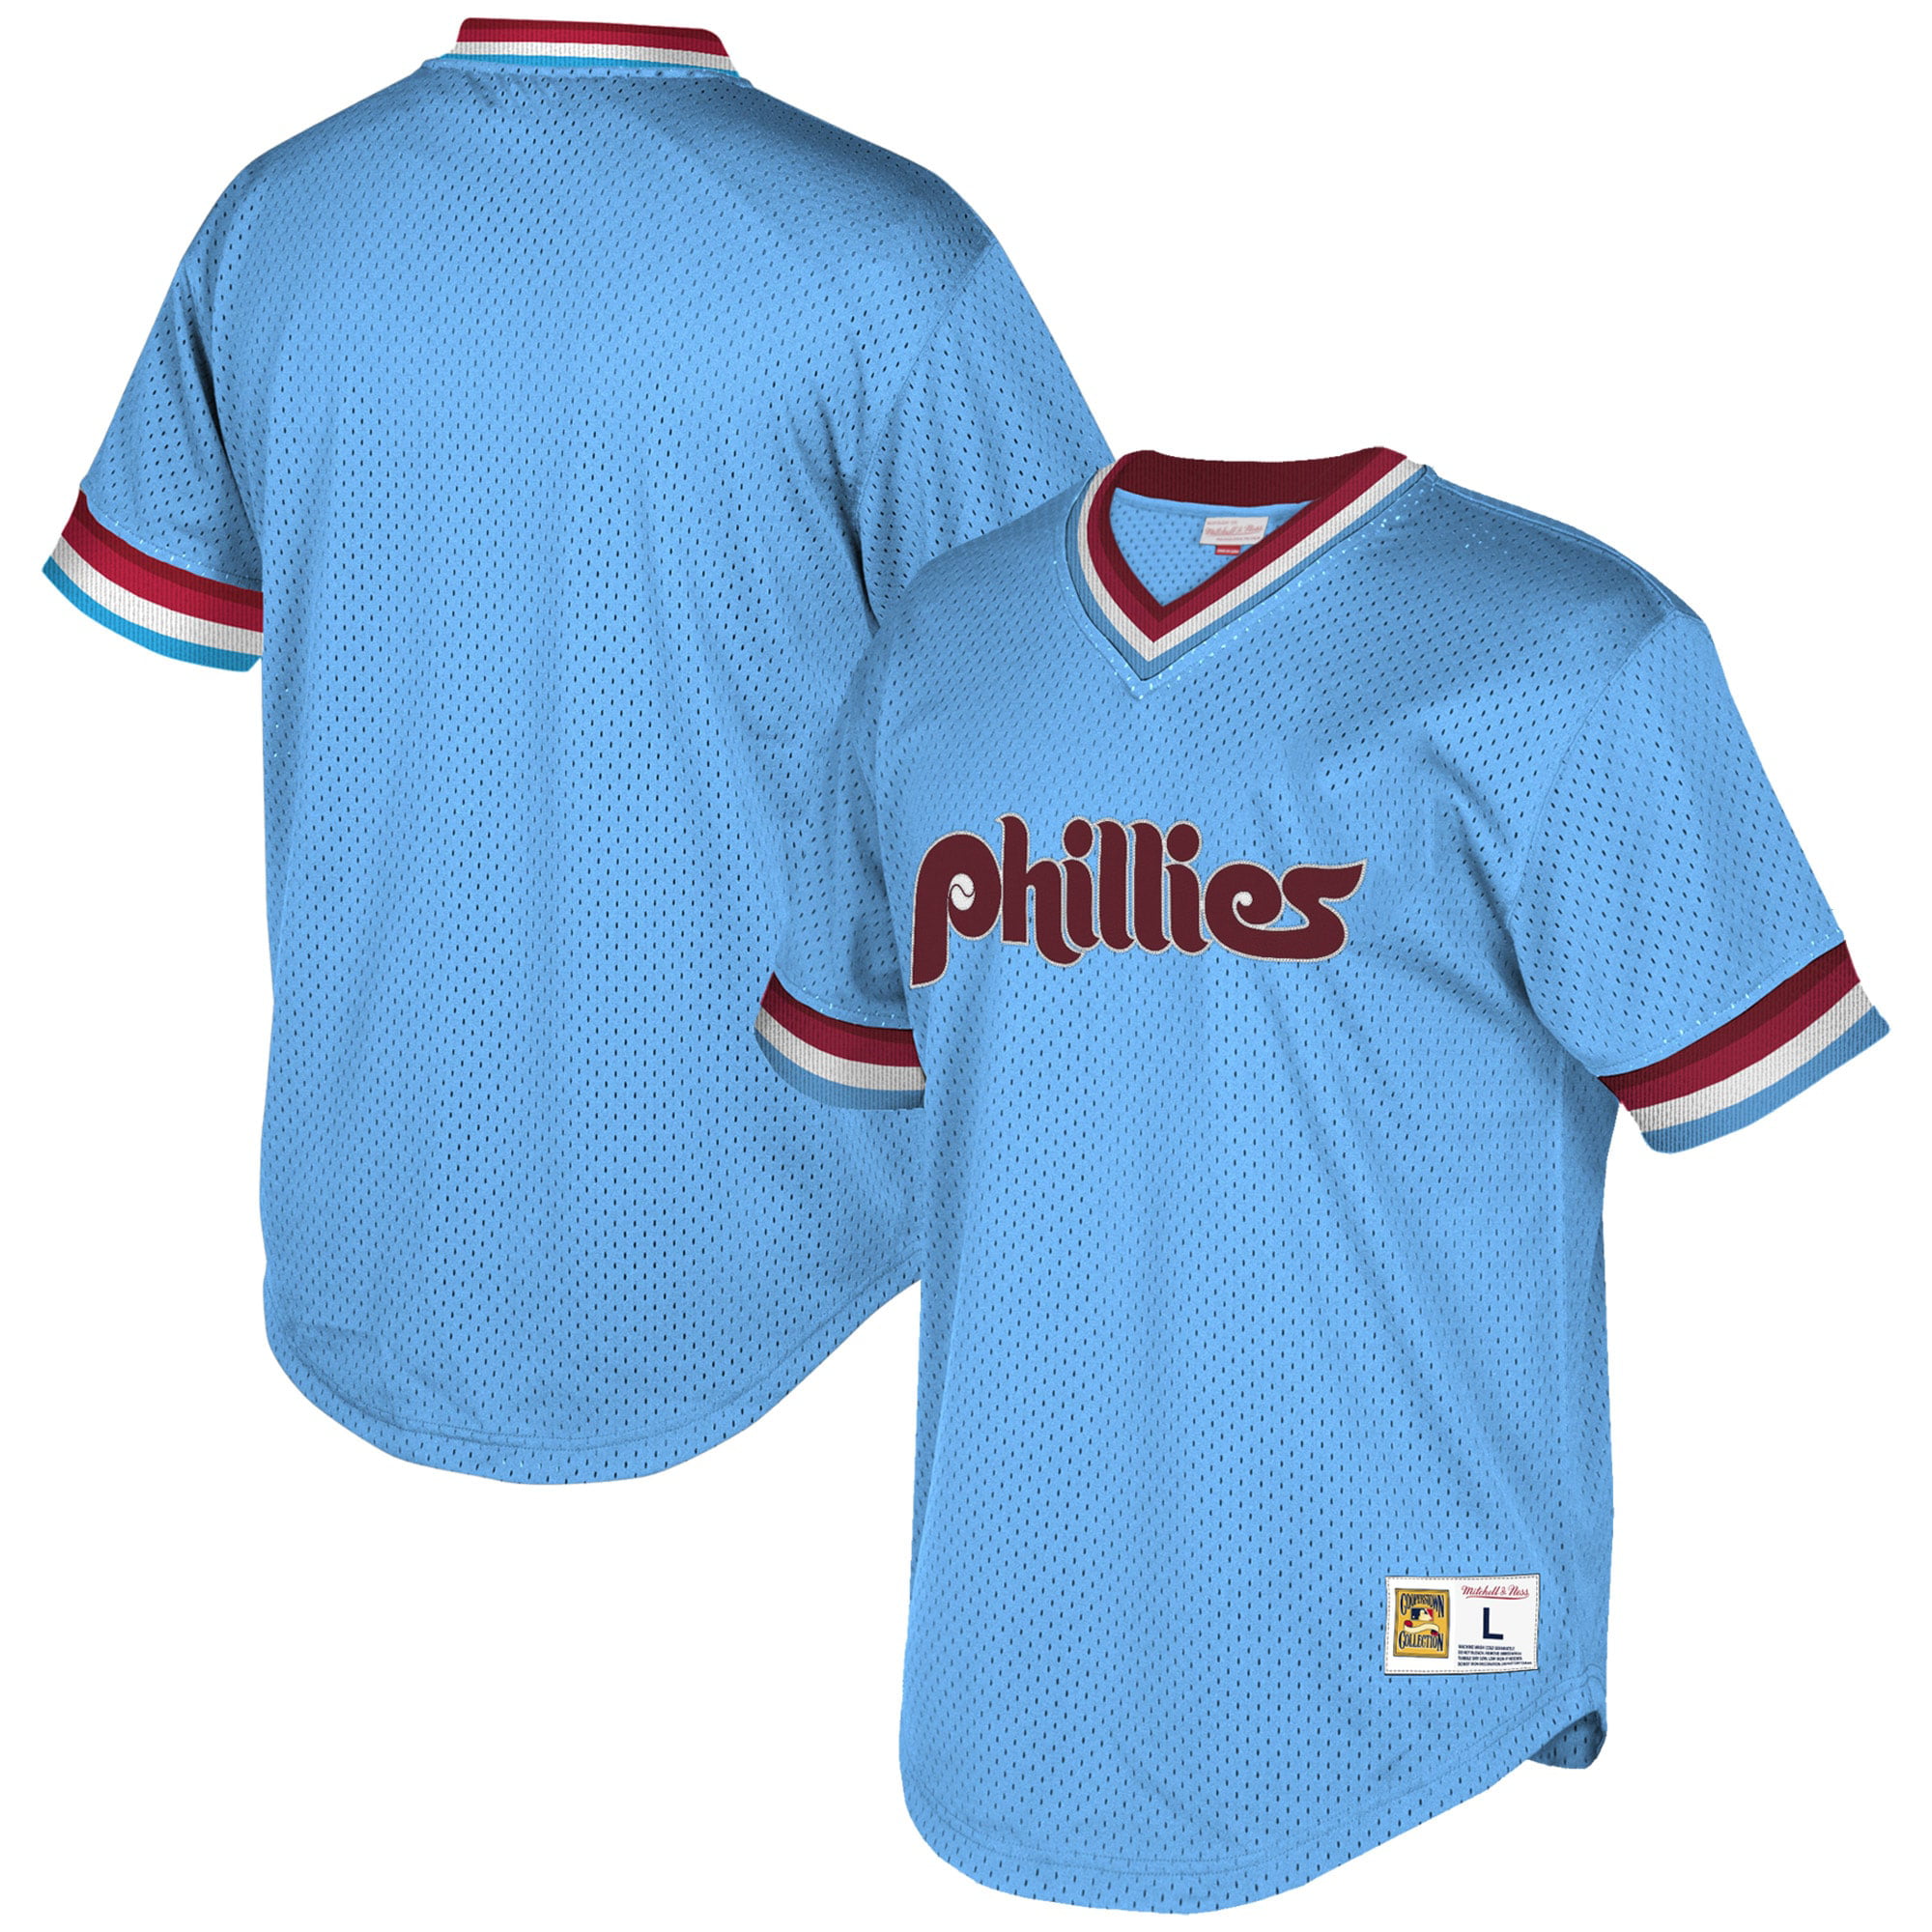 phillies blue uniform